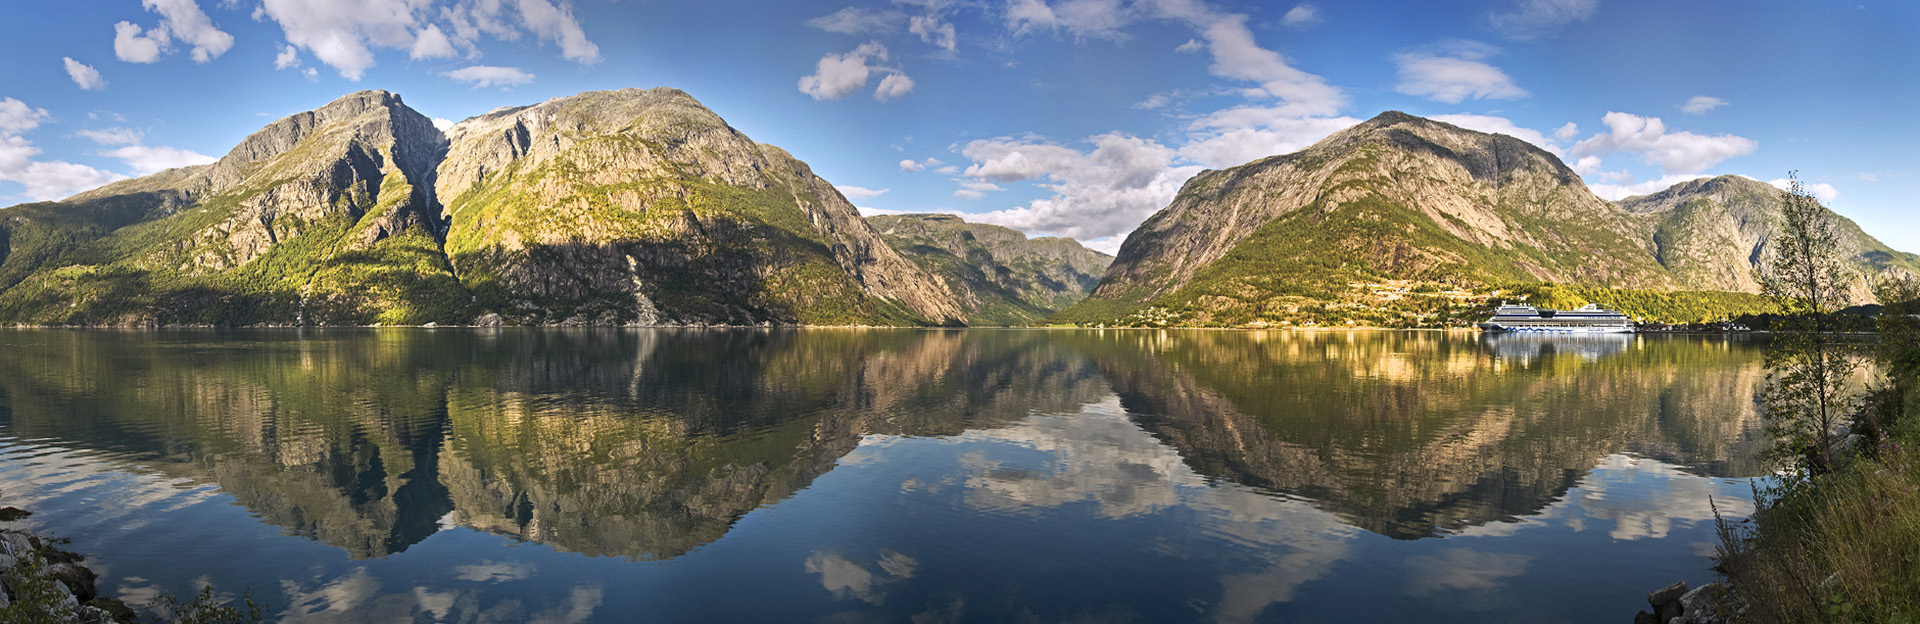 Norwegen - Eidfjord mit Aida